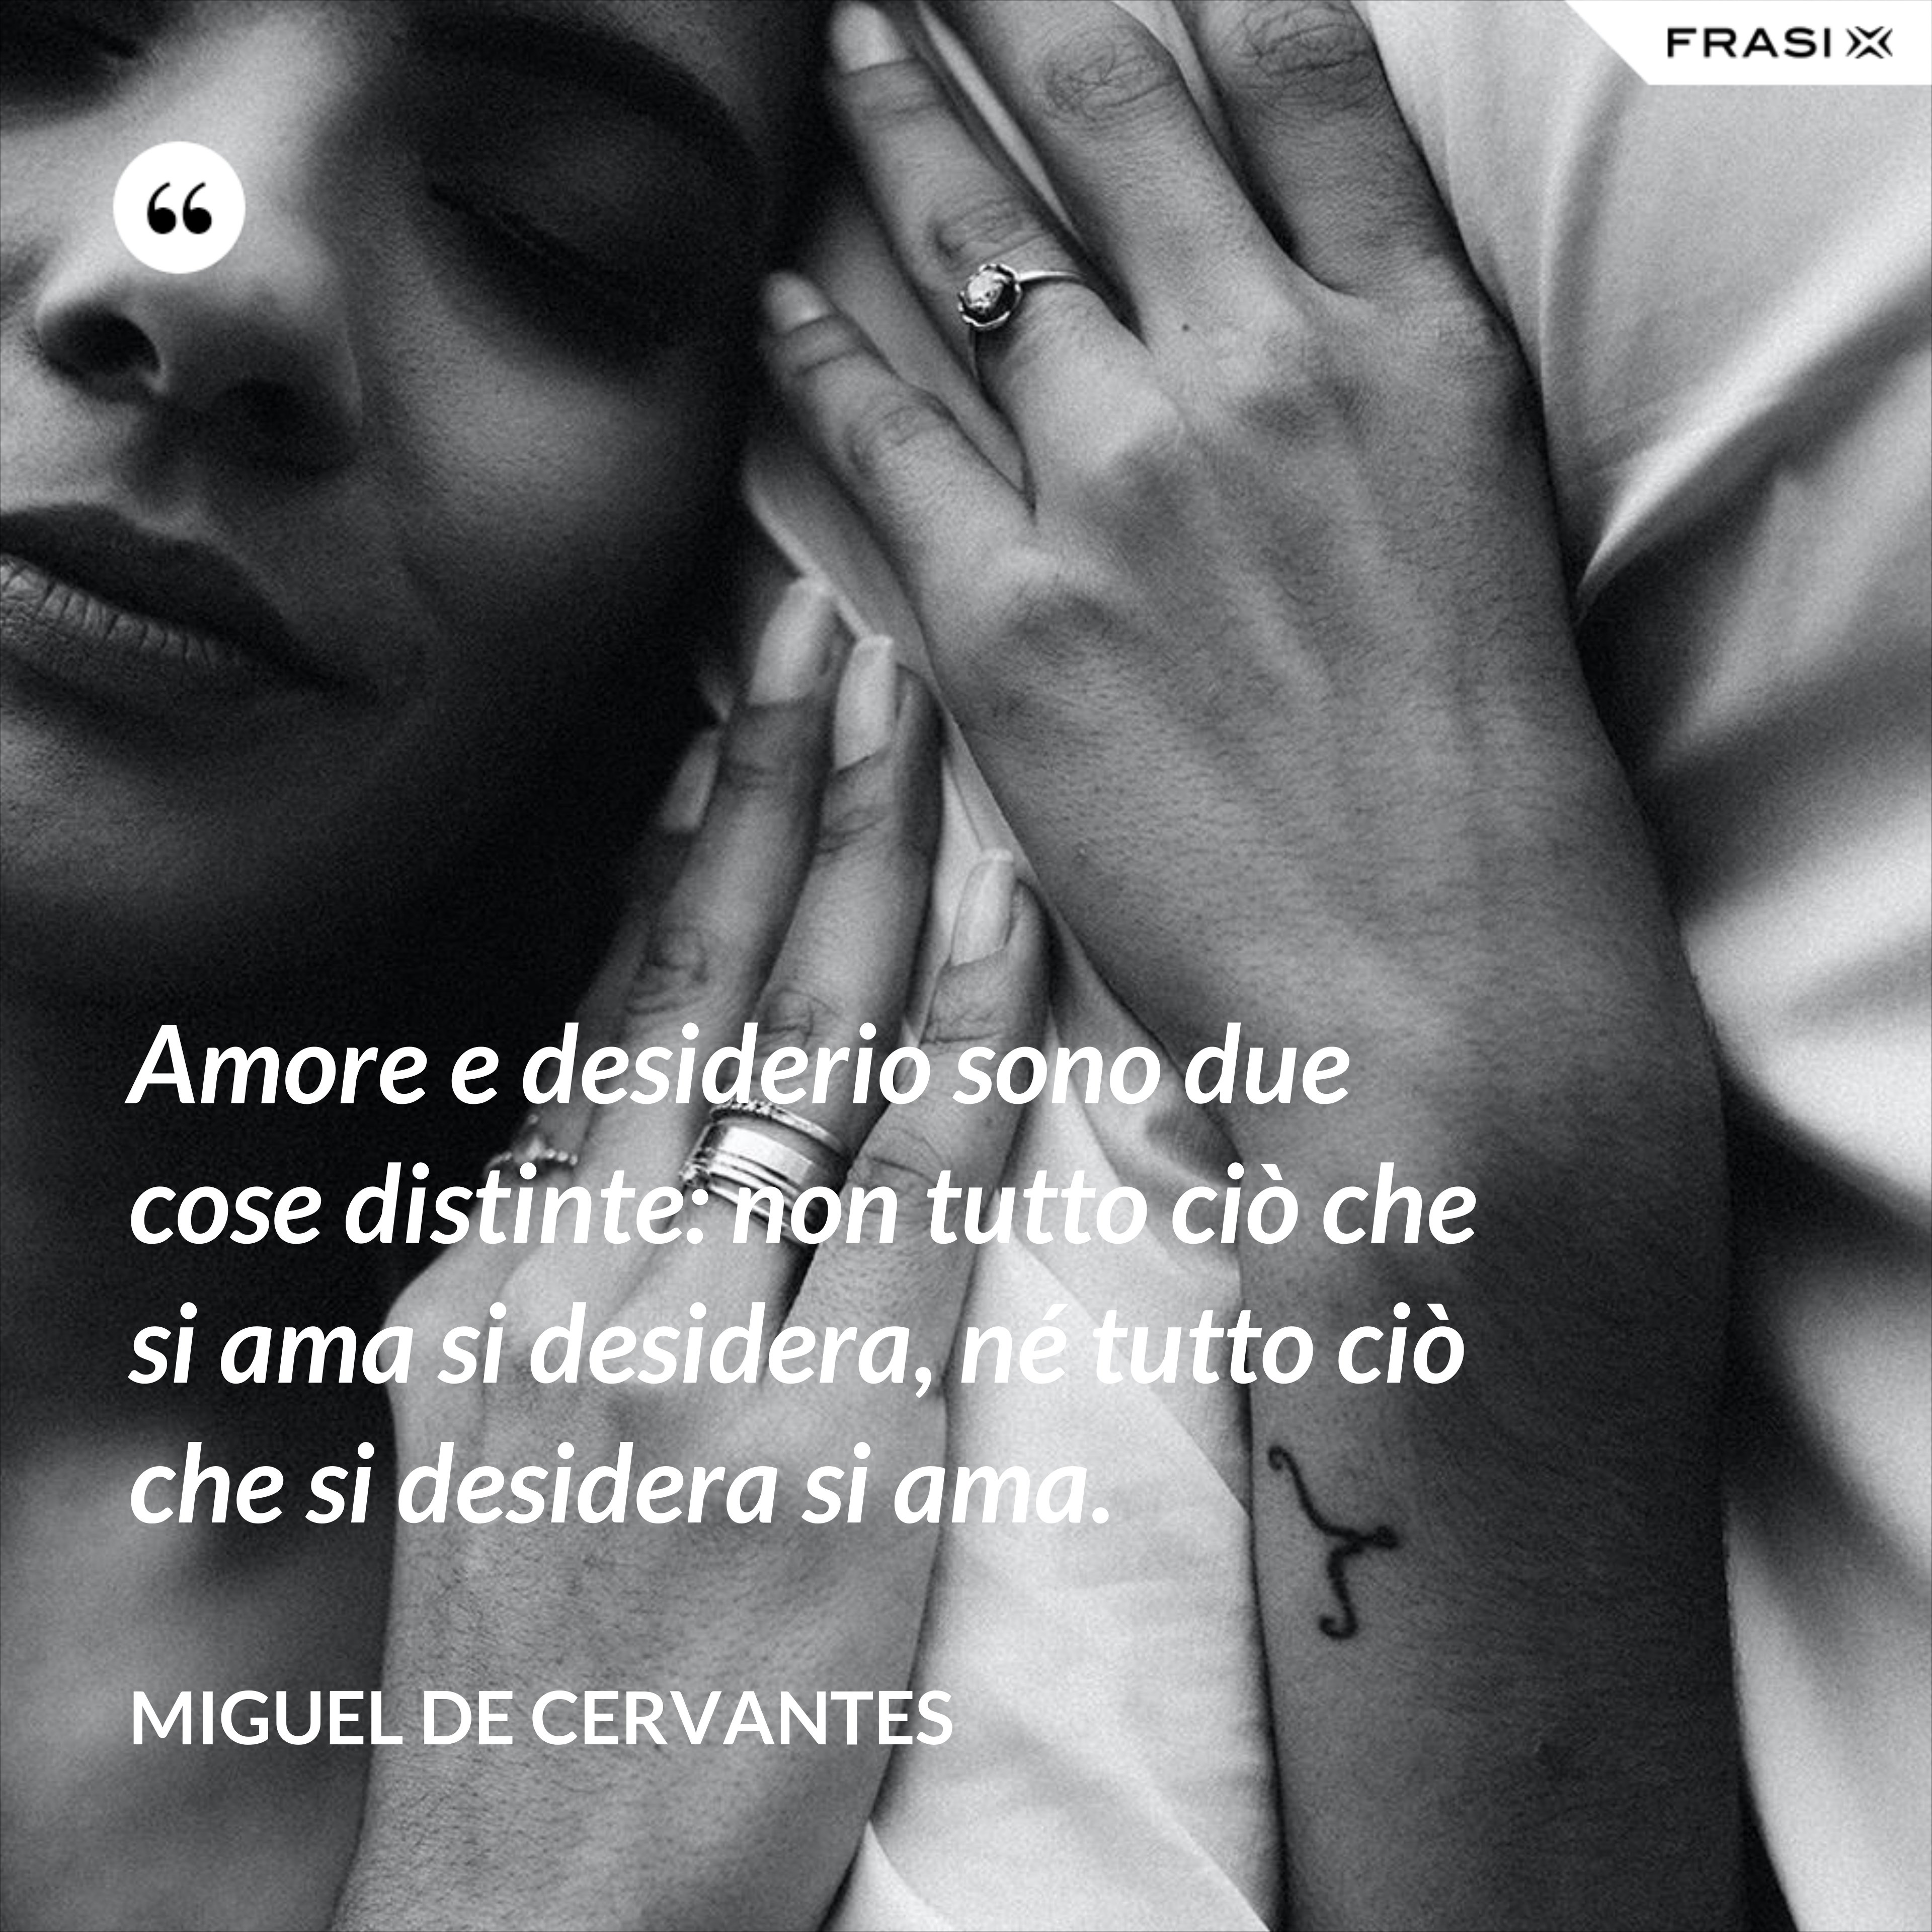 Amore e desiderio sono due cose distinte: non tutto ciò che si ama si desidera, né tutto ciò che si desidera si ama. - Miguel de Cervantes